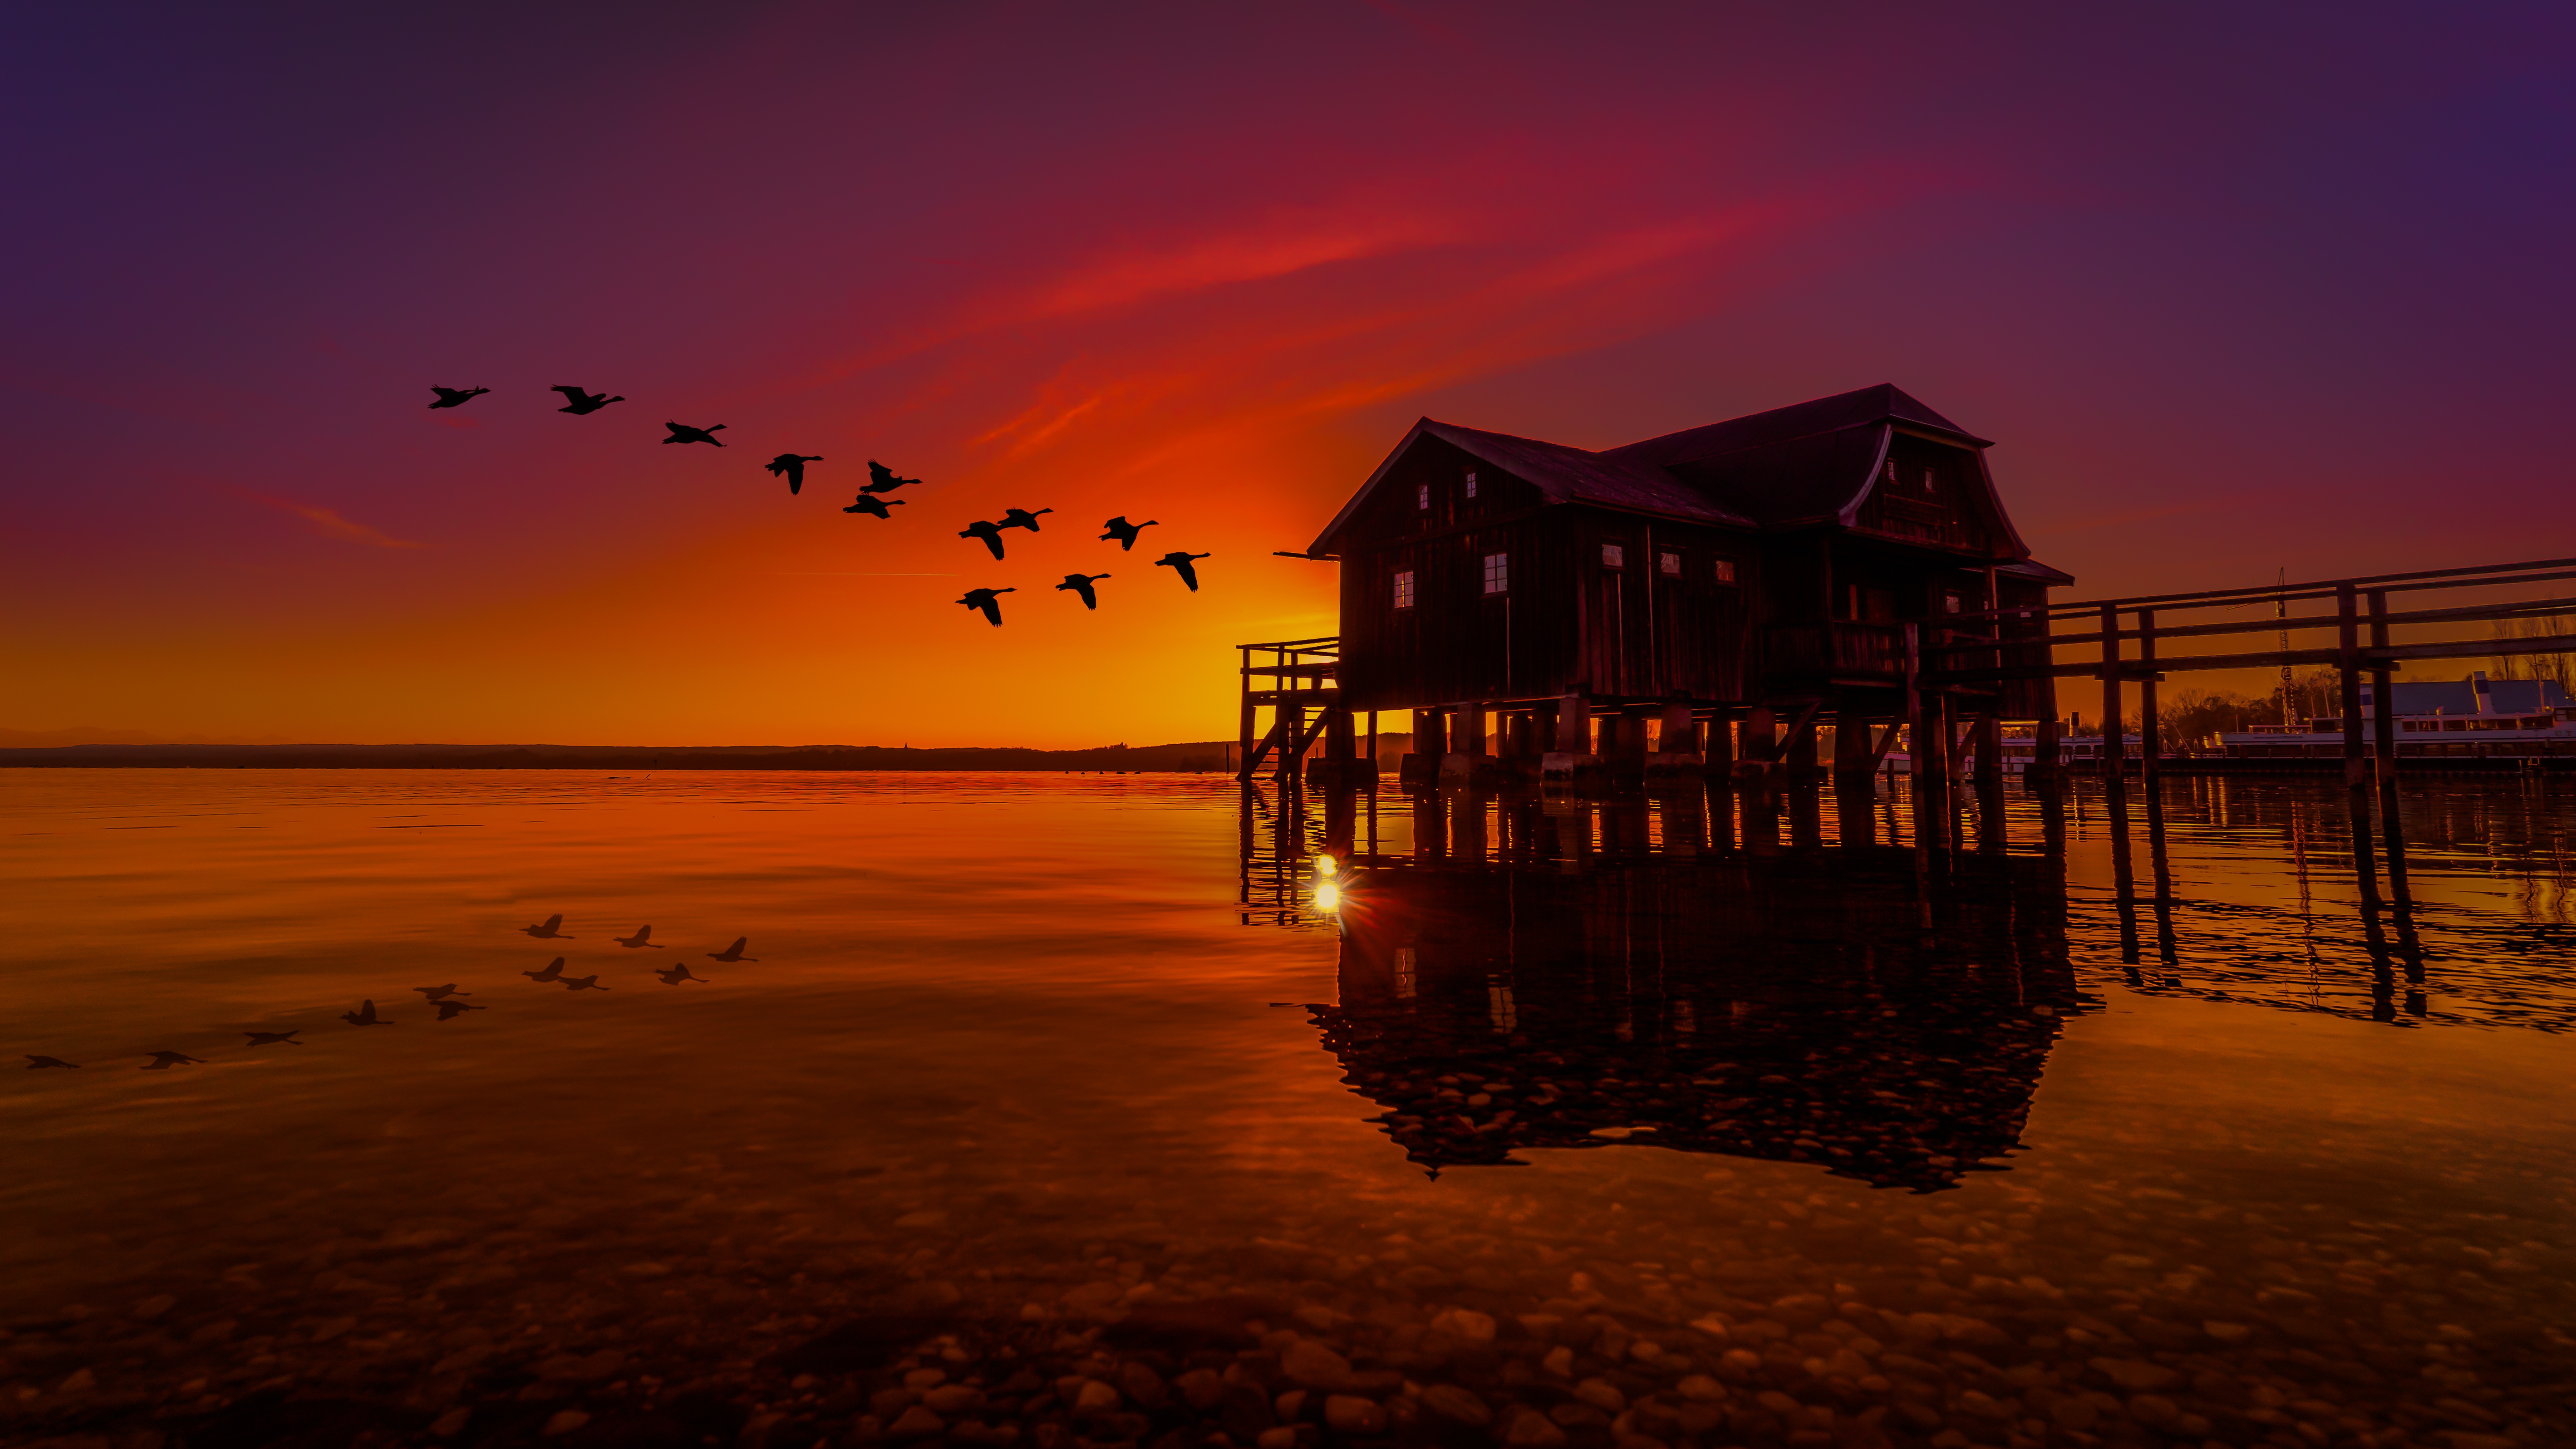 Boat House Flock Of Birds Lake Reflection Sunset 5676x3193